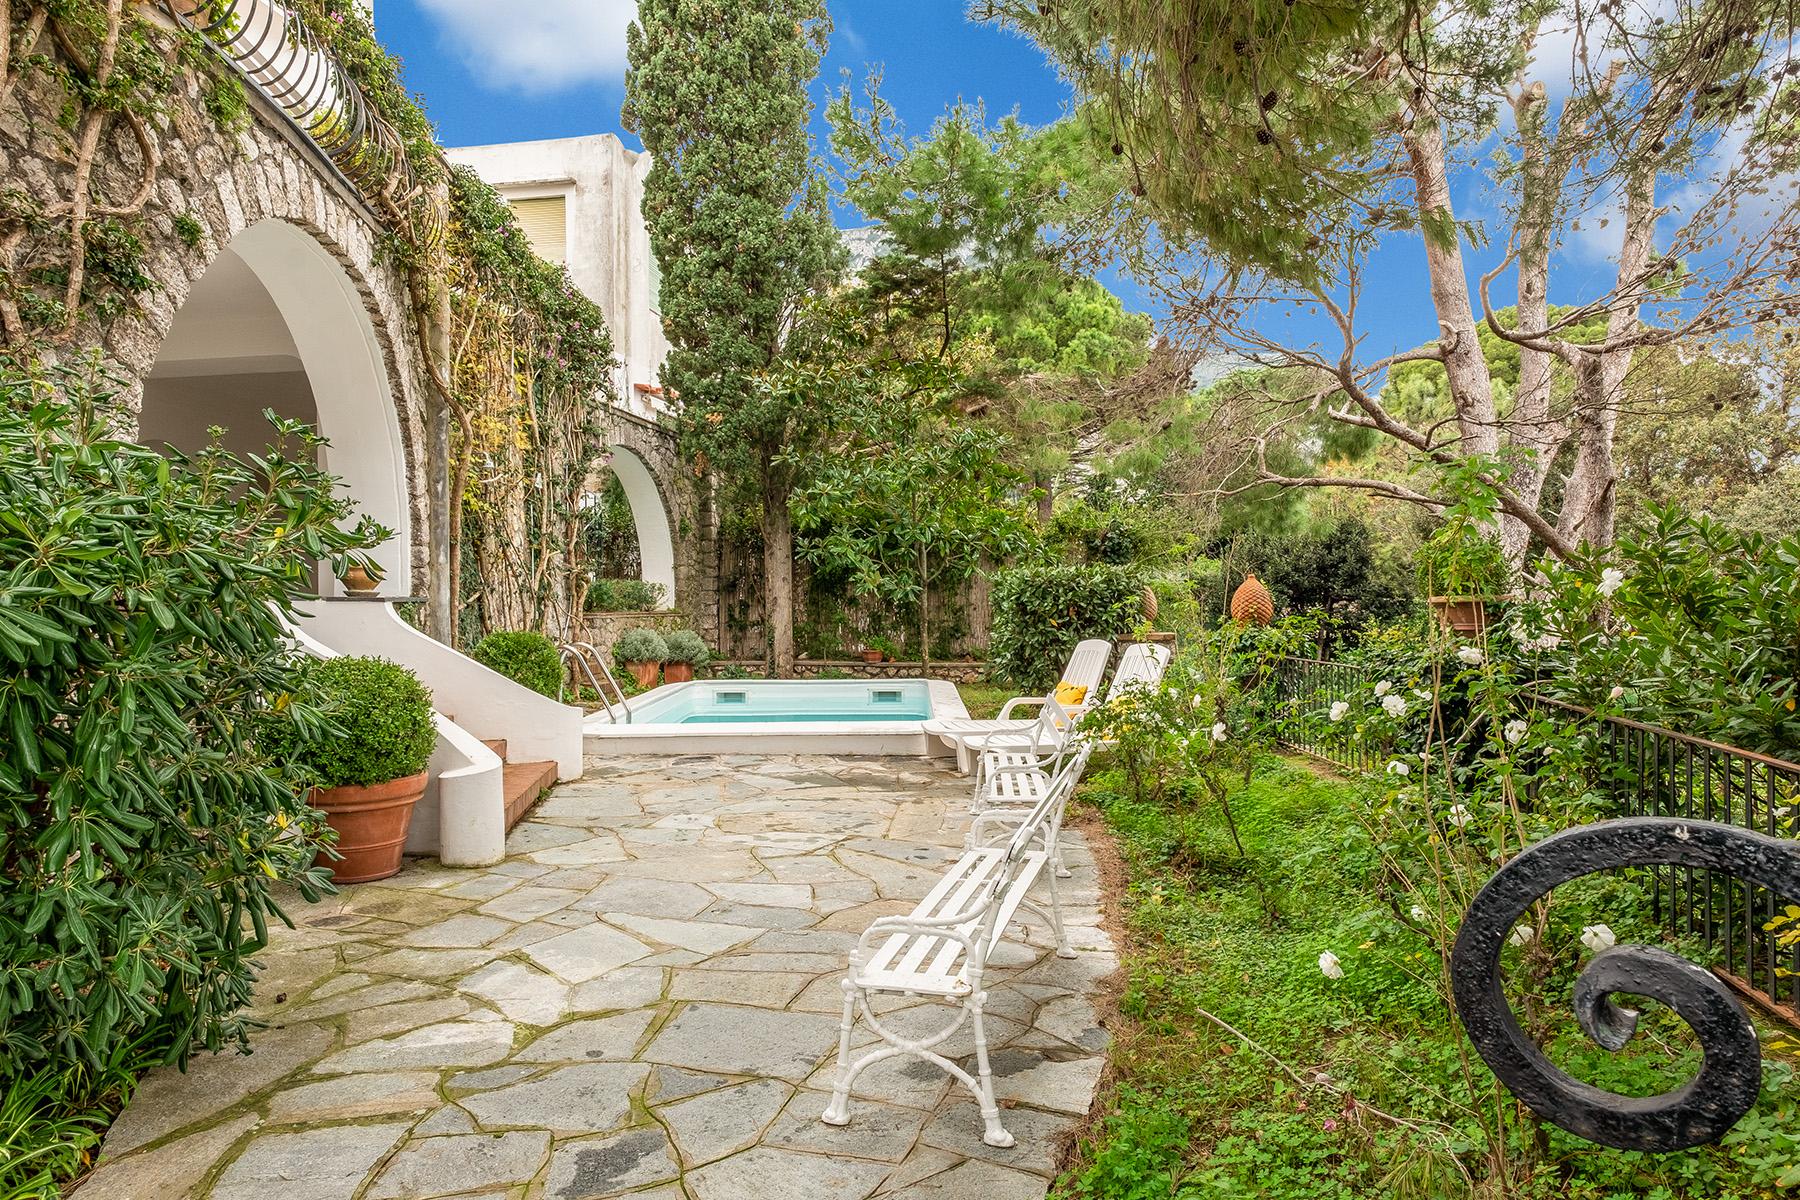 Splendida villa con piscina a due passi del centro di Capri - 27